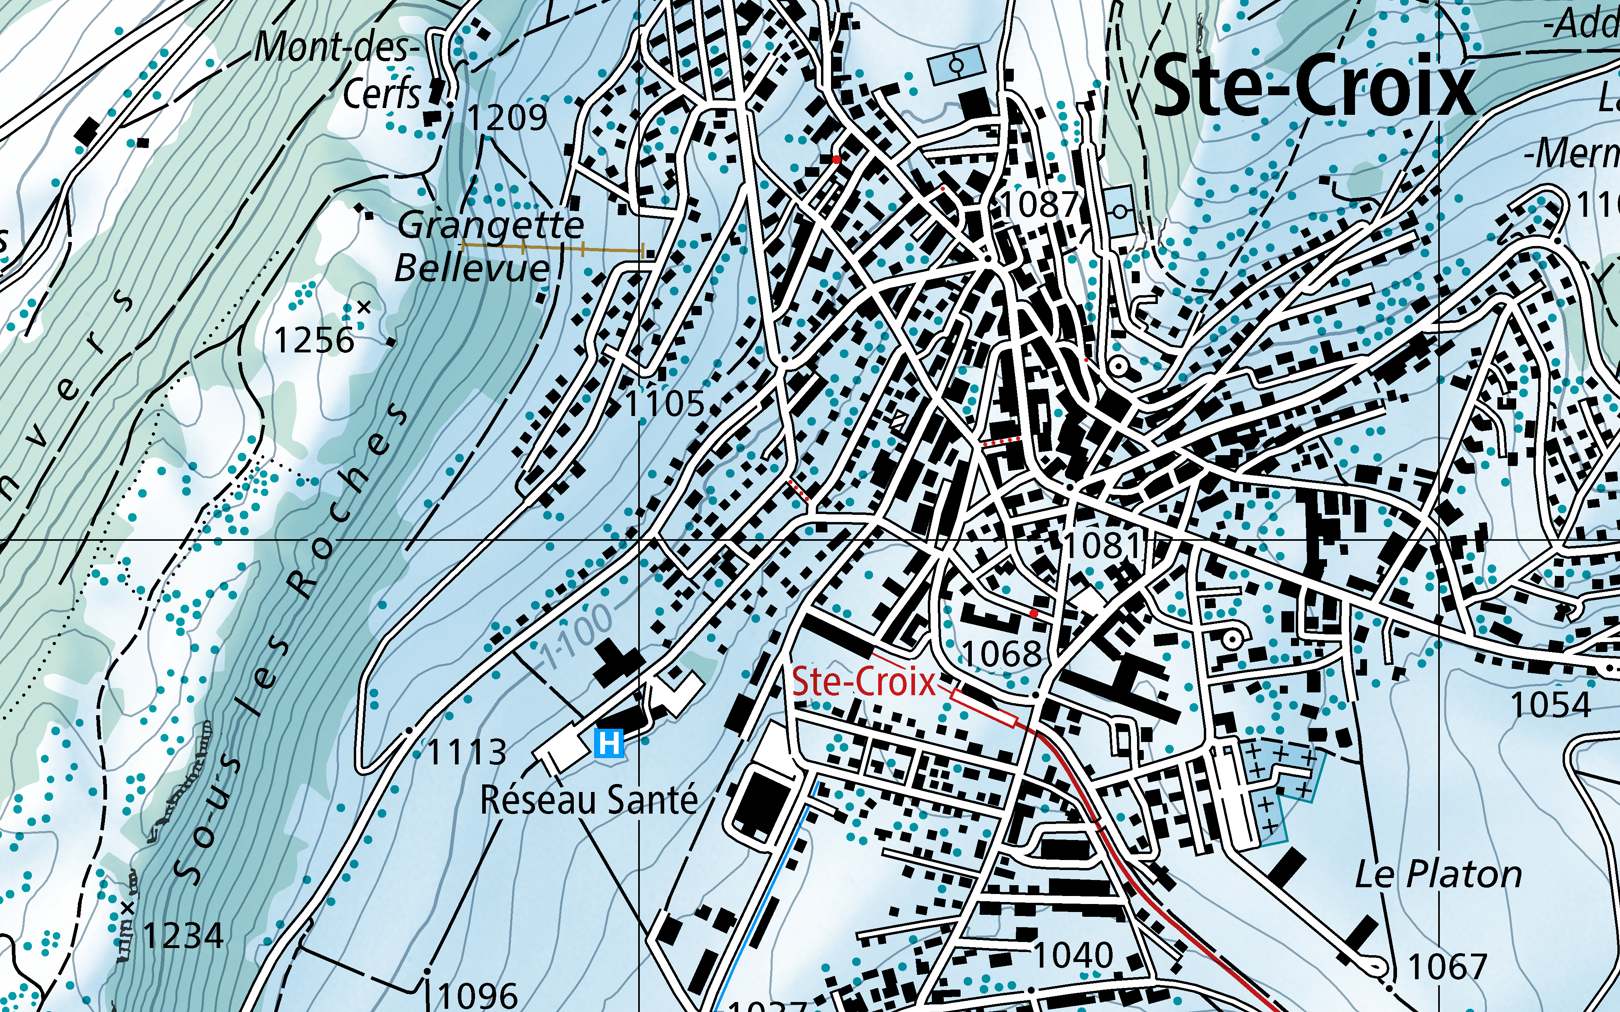 Das Bild zeigt einen Kartenausschnitt von Ste-Croix in winterlicher Farbgebung.